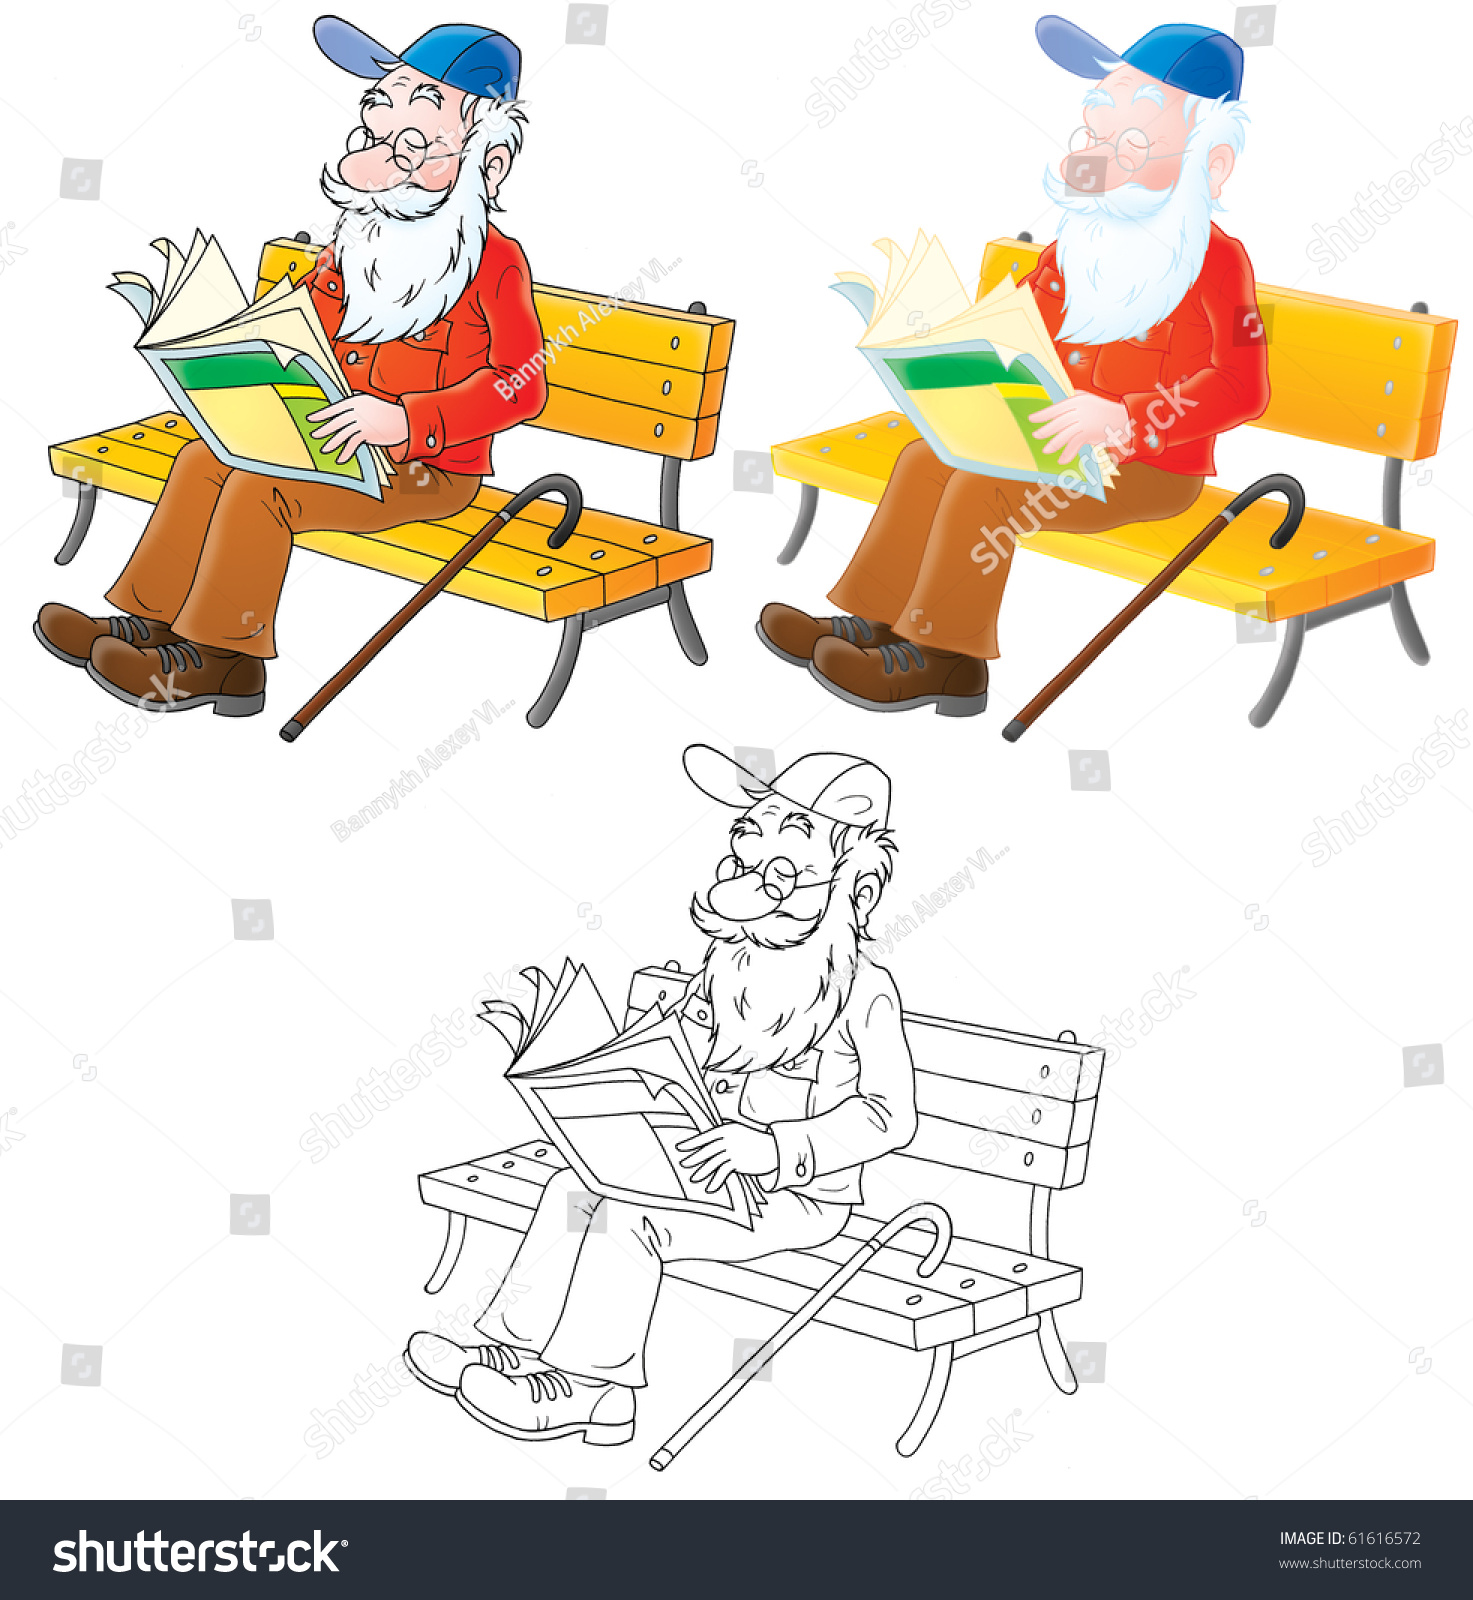 Нарисованные старички сидящие на лавке